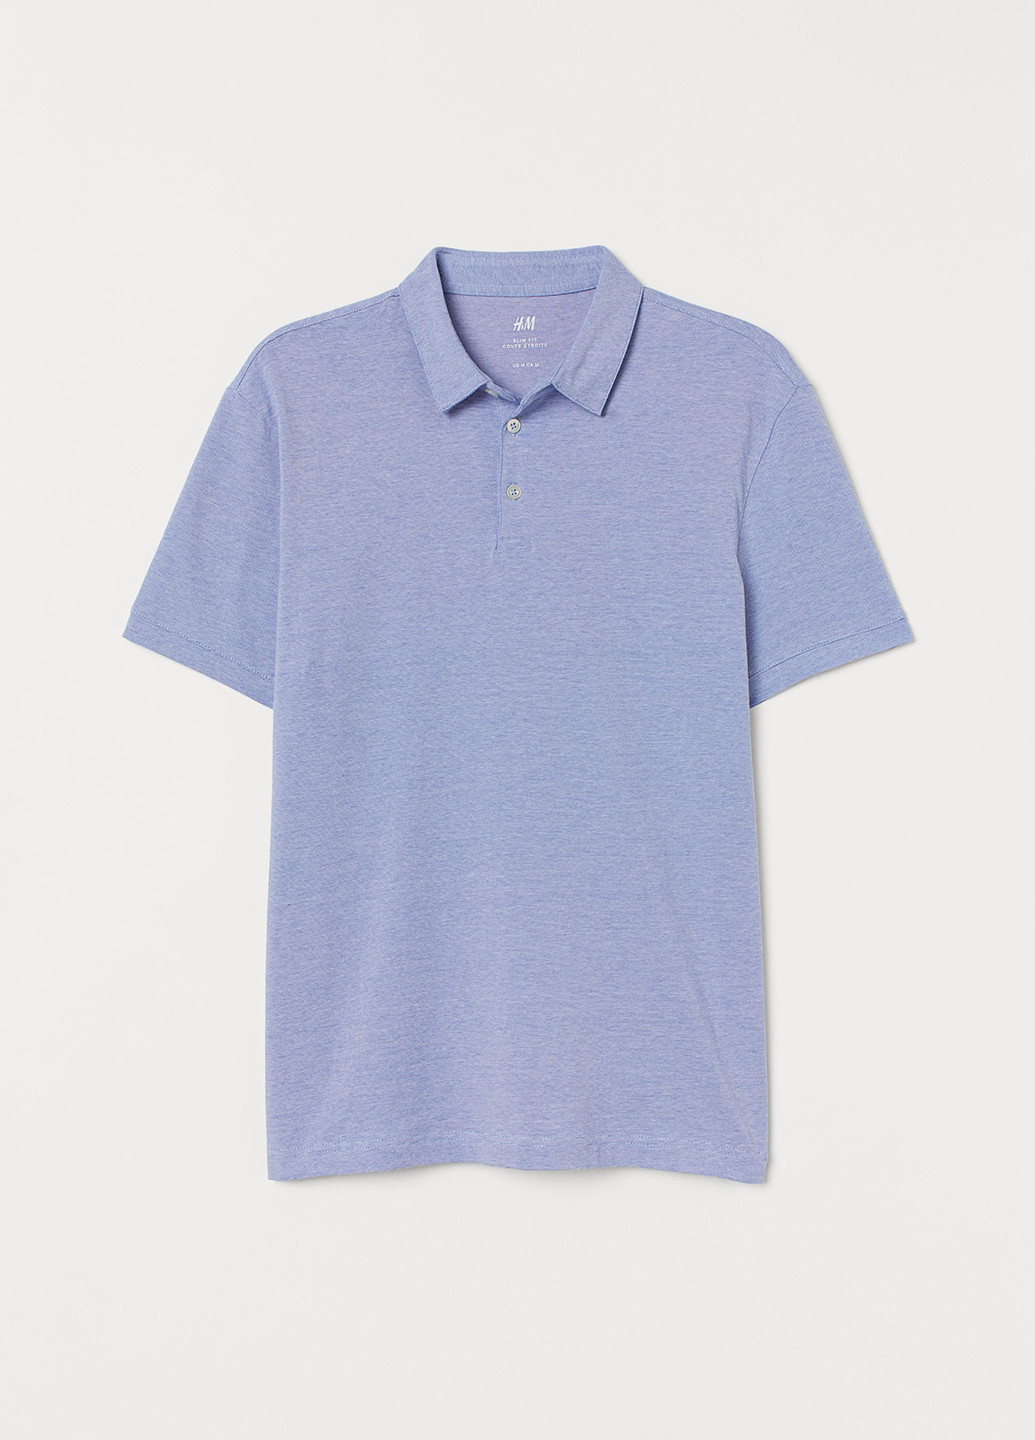 Голубой футболка-поло для мужчин H&M меланжевая